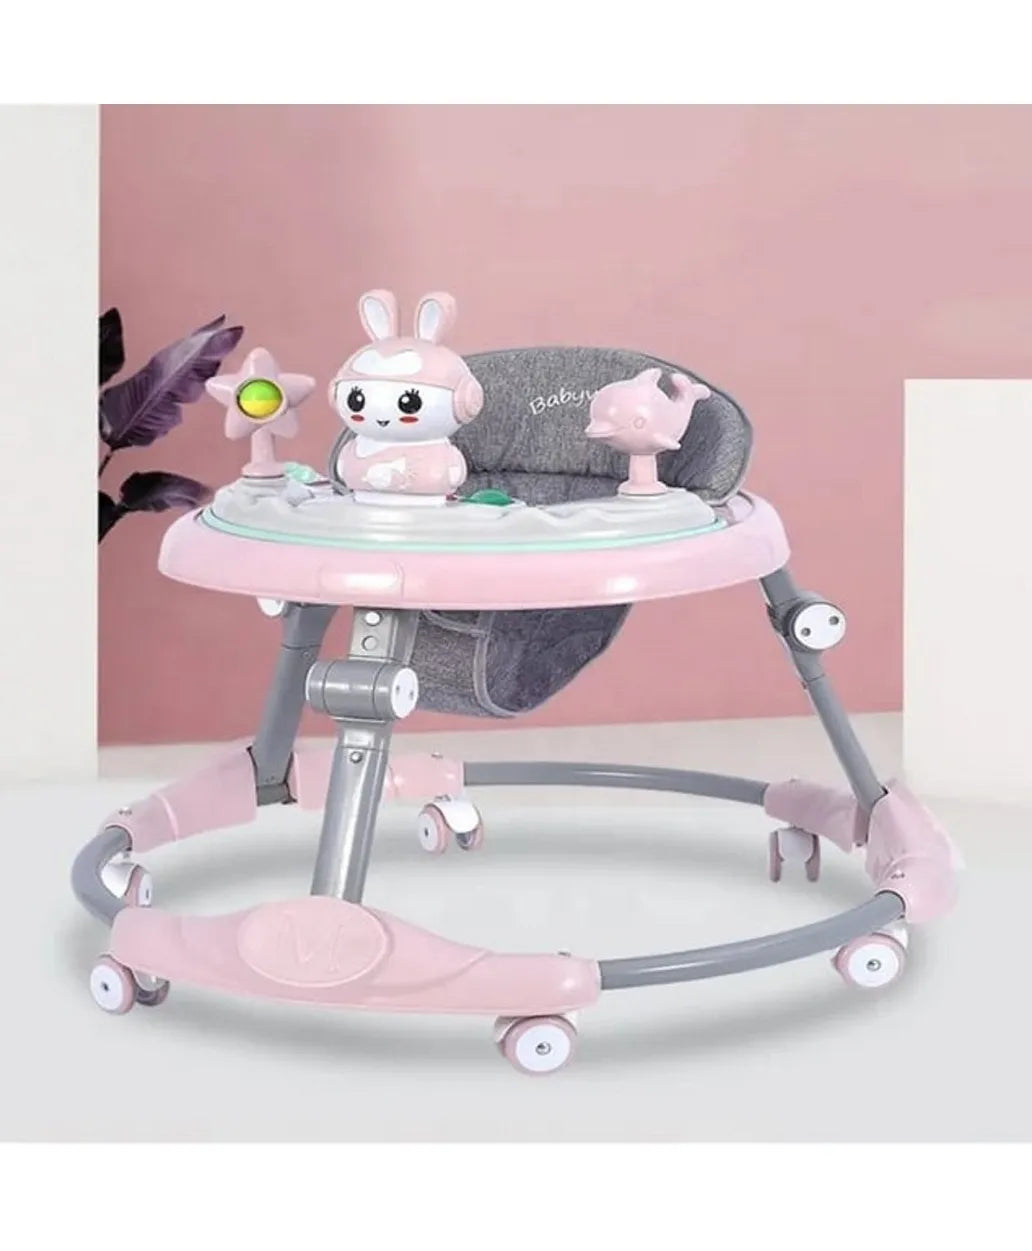 Pikkaboo RforRabbit Roll & Learn Baby Walker - Pink - Laadlee